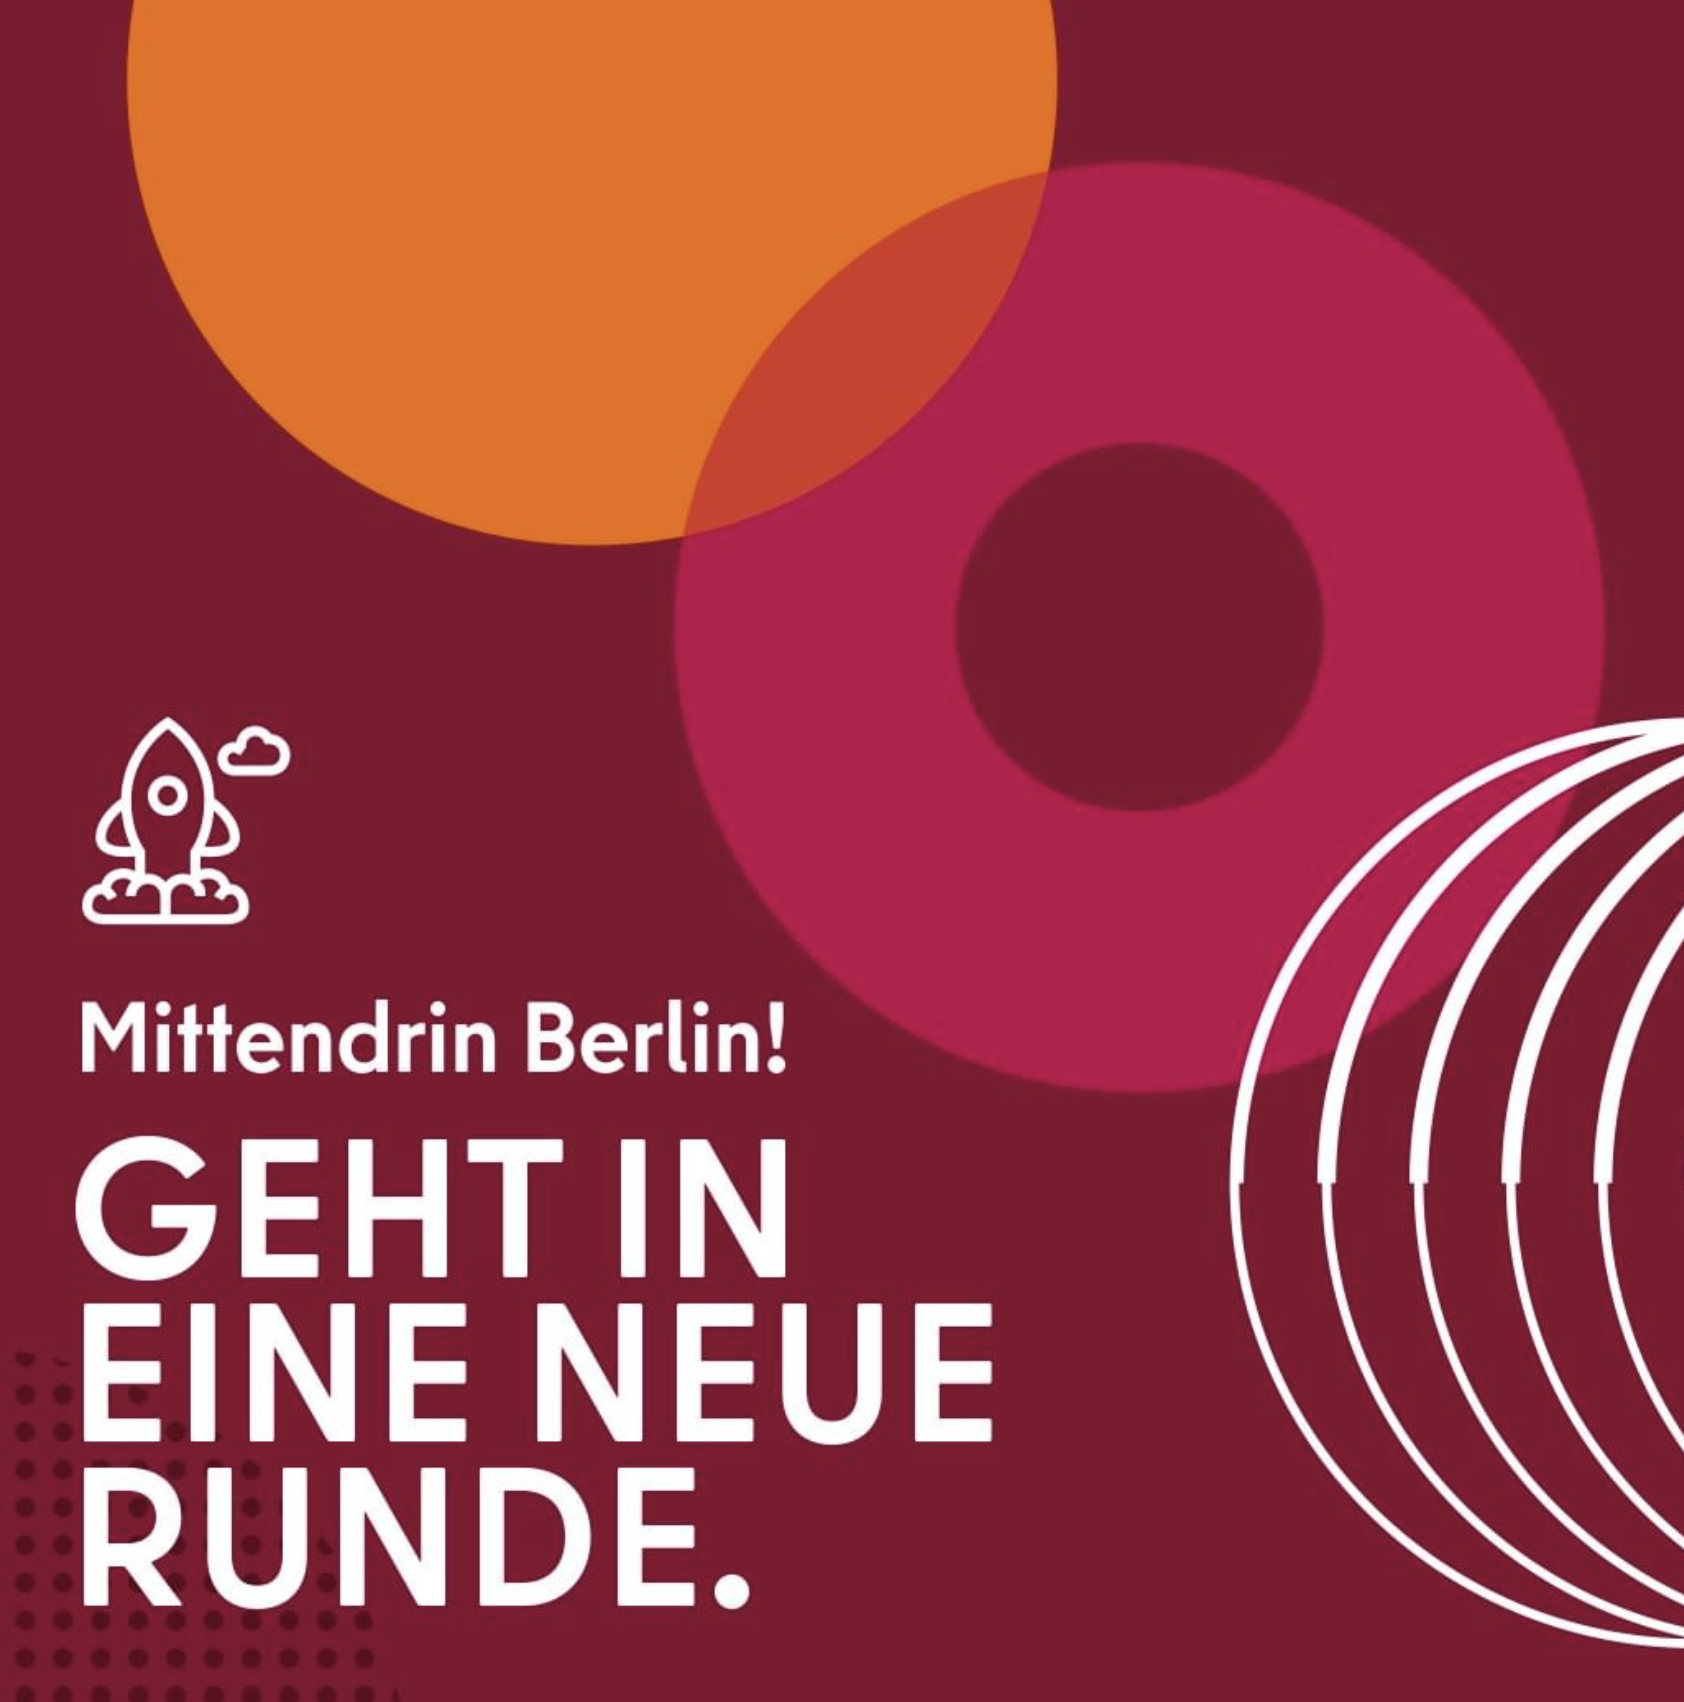 mittendrin berlin! projekte in berliner zentren